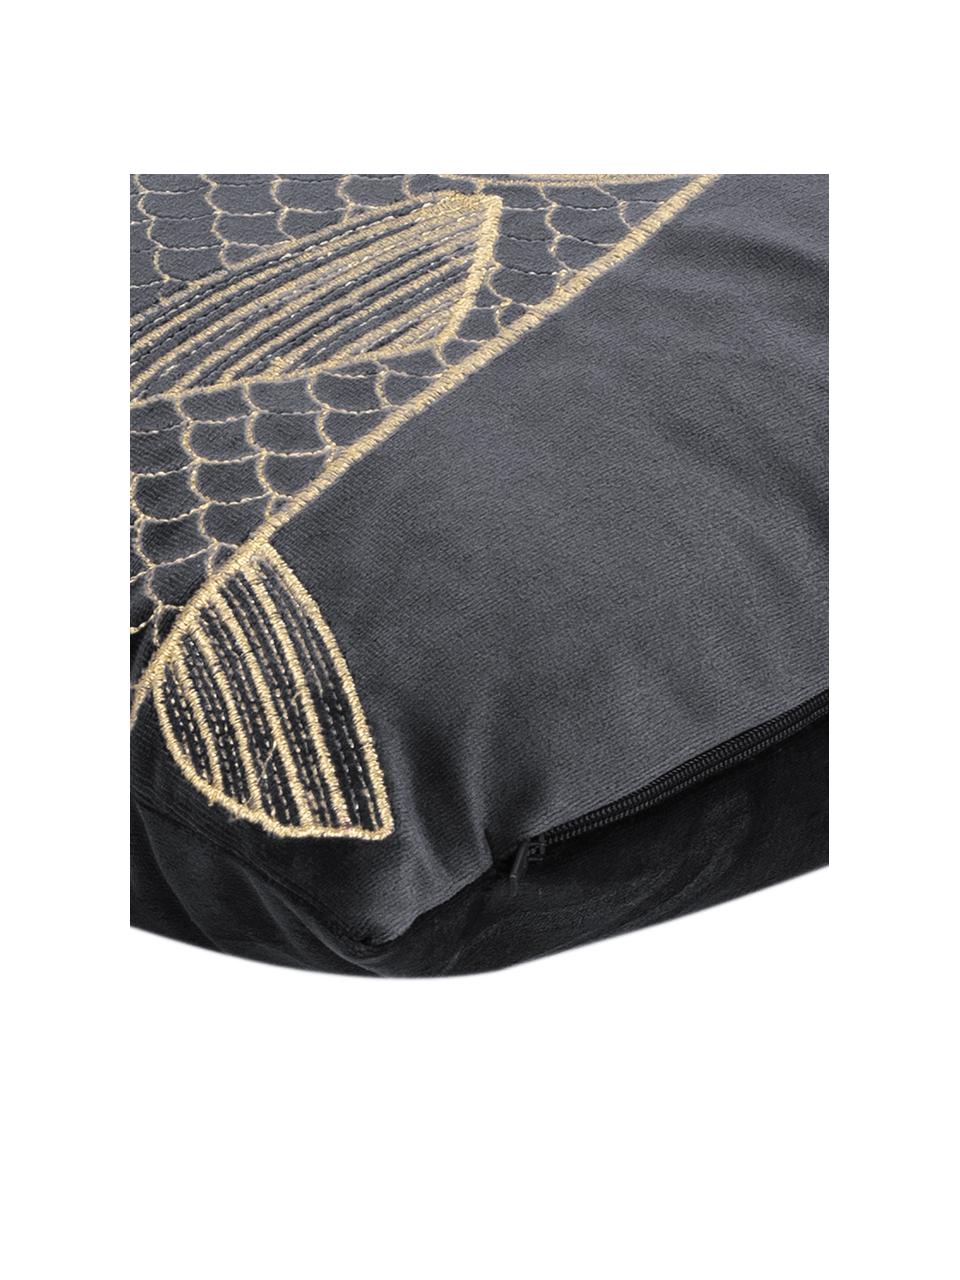 Donkergrijze fluwelen kussenhoes Caja met goudkleurig borduursel, 100% polyester fluweel, Donkergrijs, 30 x 50 cm